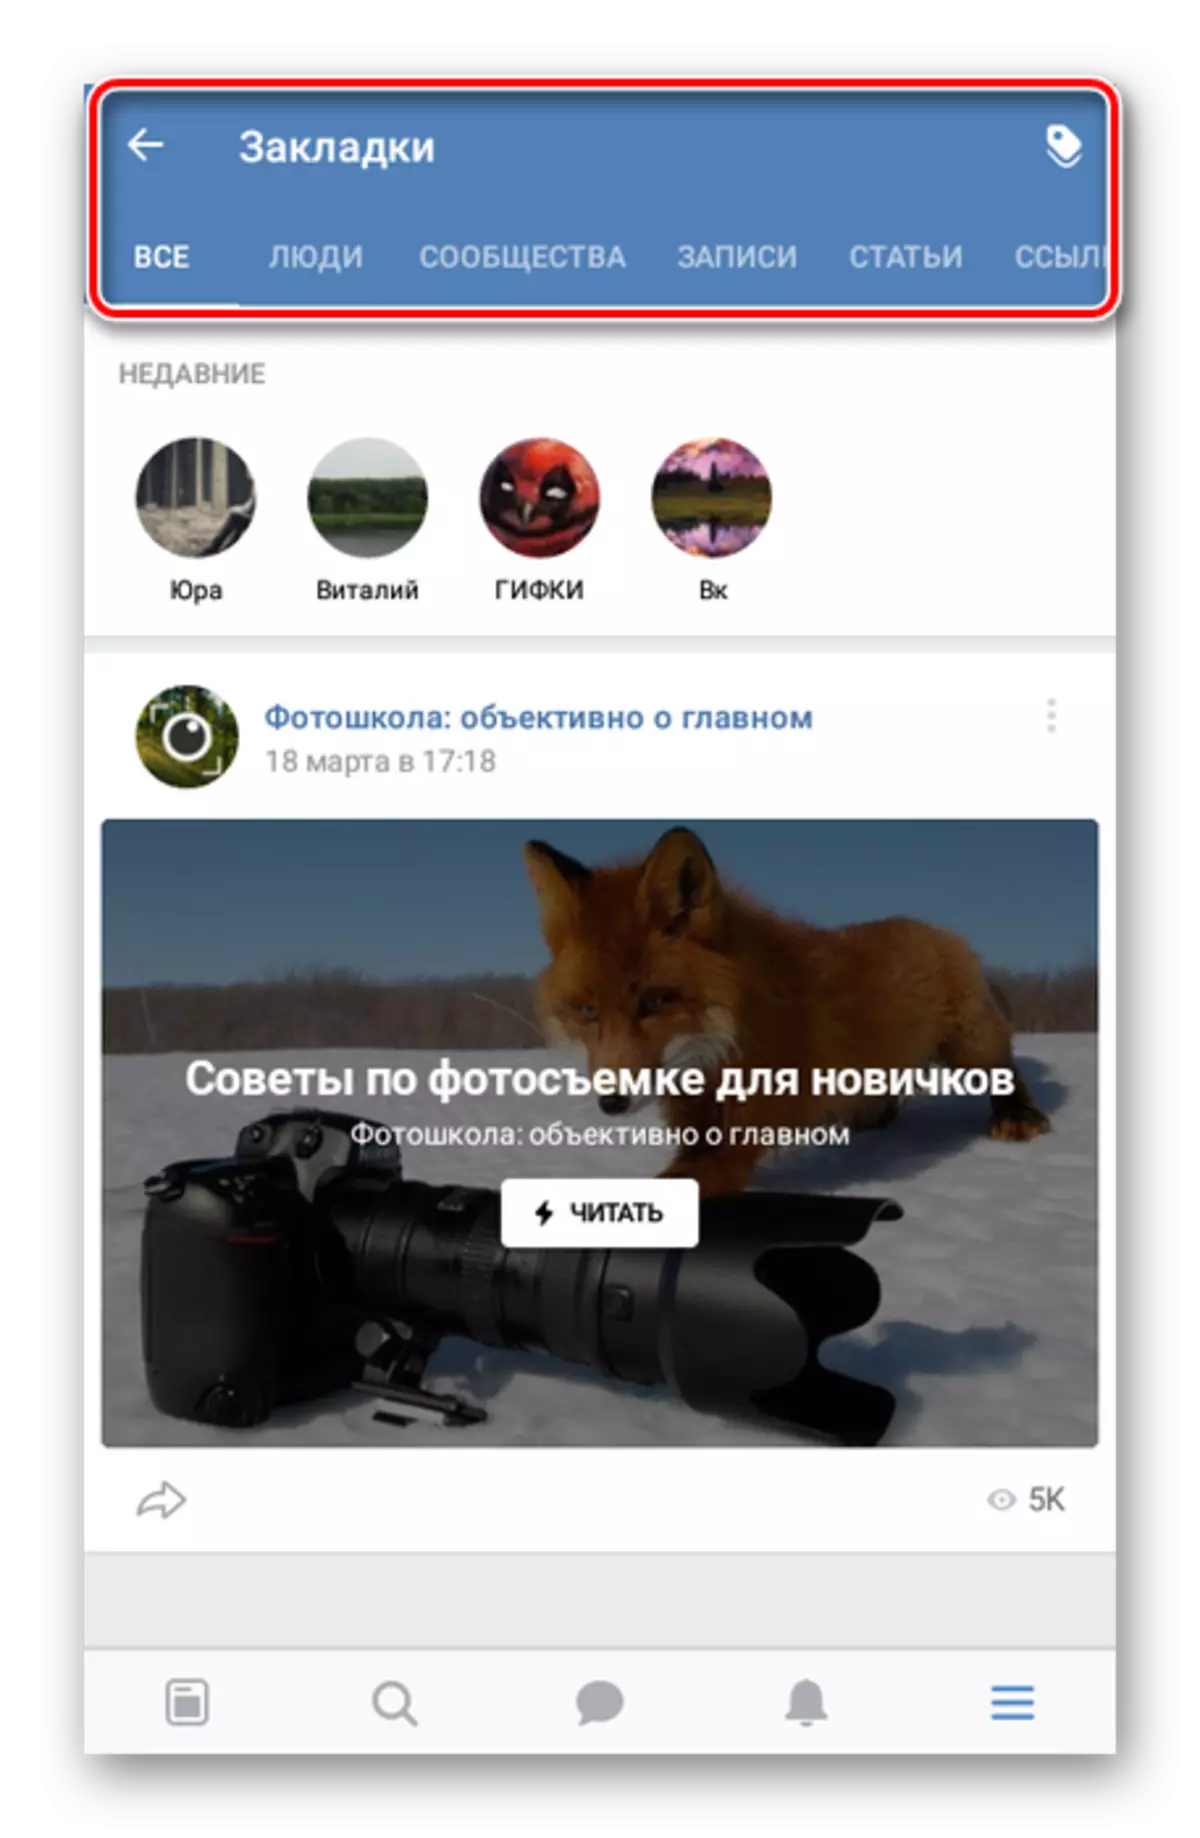 Դիտեք էջանիշի ցուցակը VKontakte դիմումում